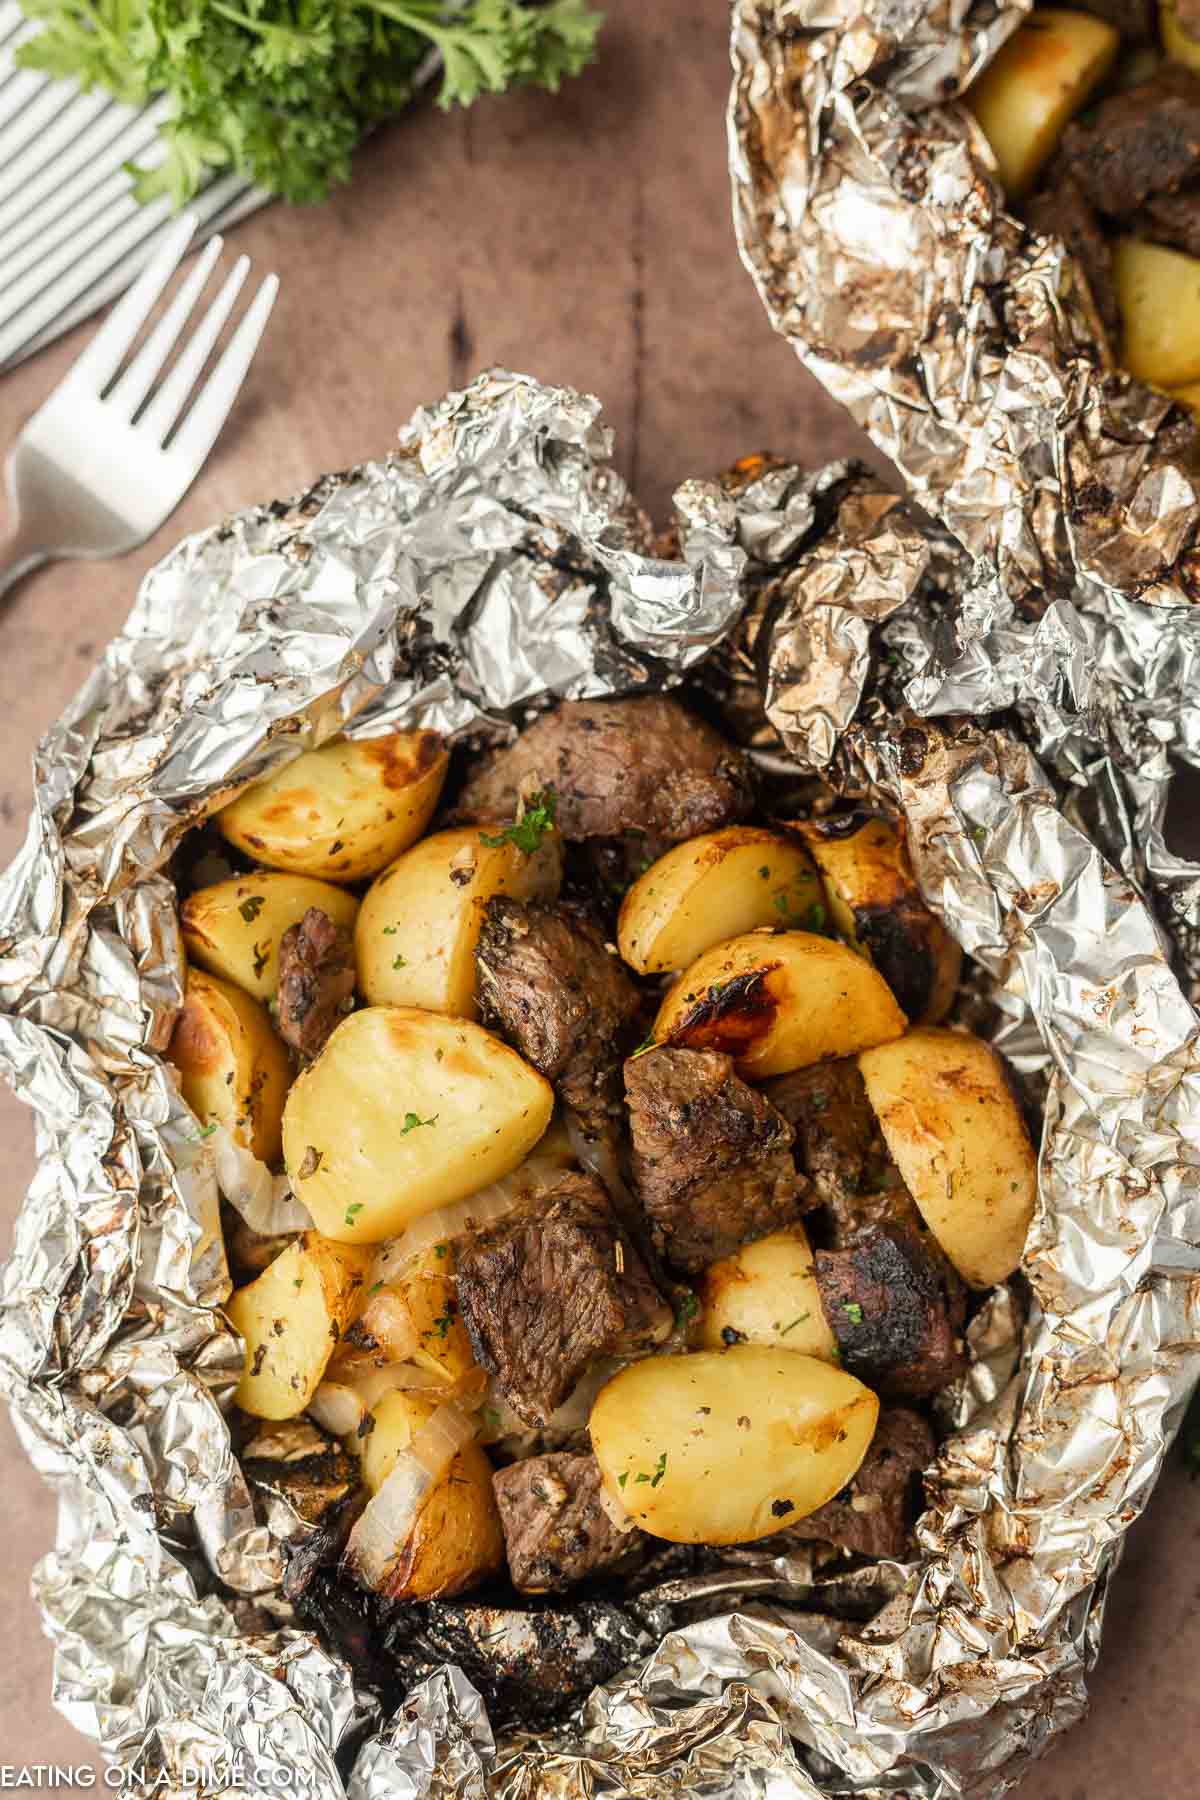 https://www.eatingonadime.com/wp-content/uploads/2022/08/eod-steak-and-potatoes-foil-packet-6.jpg